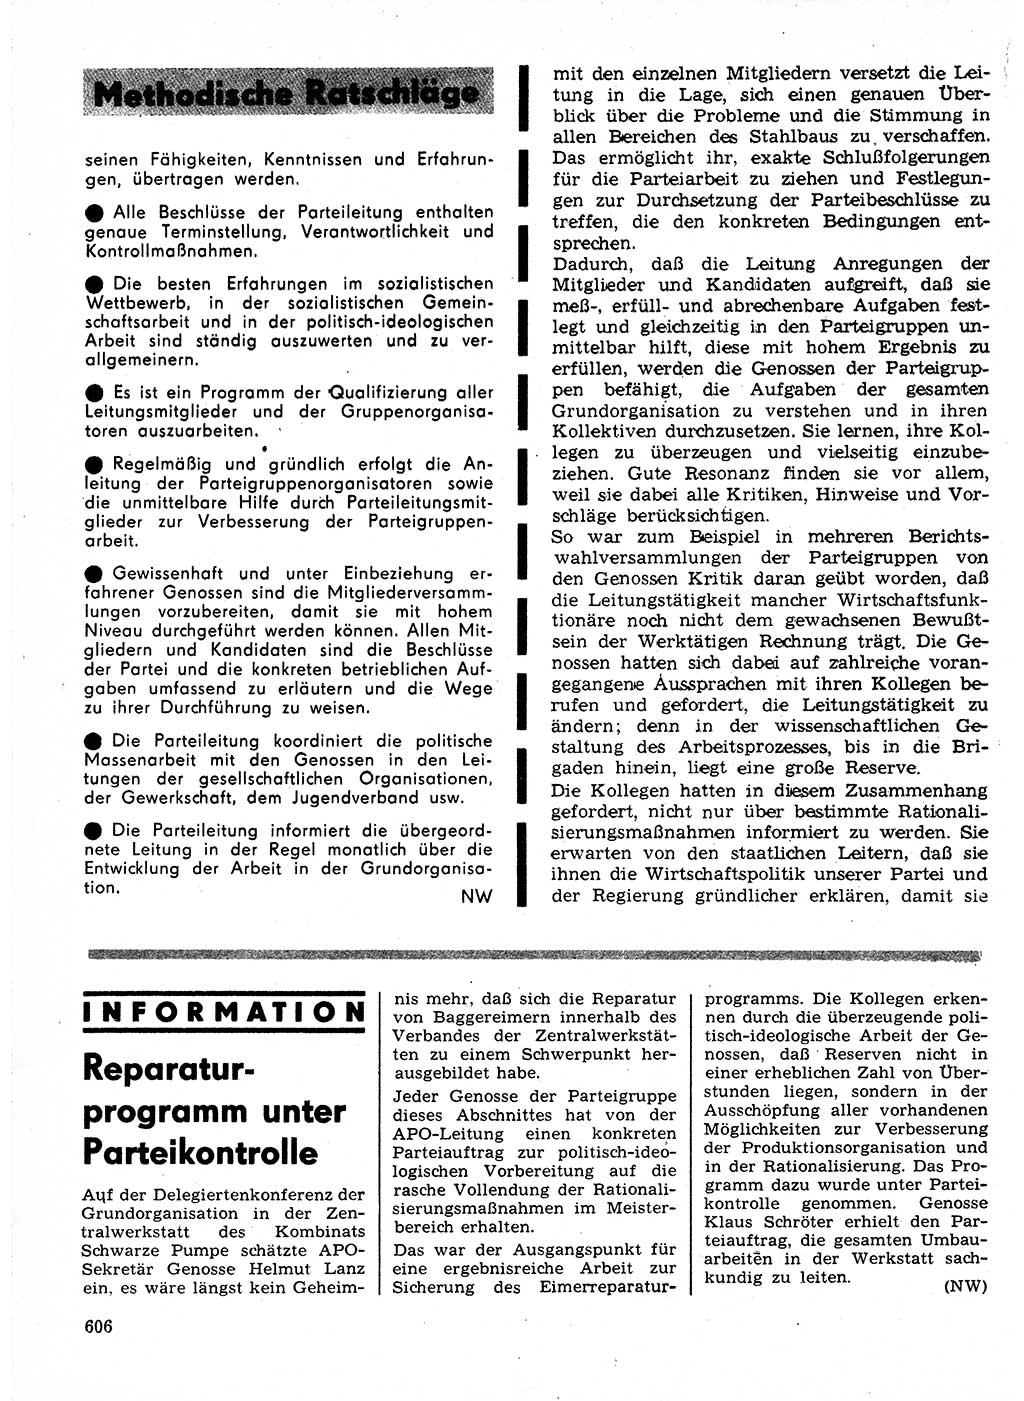 Neuer Weg (NW), Organ des Zentralkomitees (ZK) der SED (Sozialistische Einheitspartei Deutschlands) für Fragen des Parteilebens, 24. Jahrgang [Deutsche Demokratische Republik (DDR)] 1969, Seite 606 (NW ZK SED DDR 1969, S. 606)